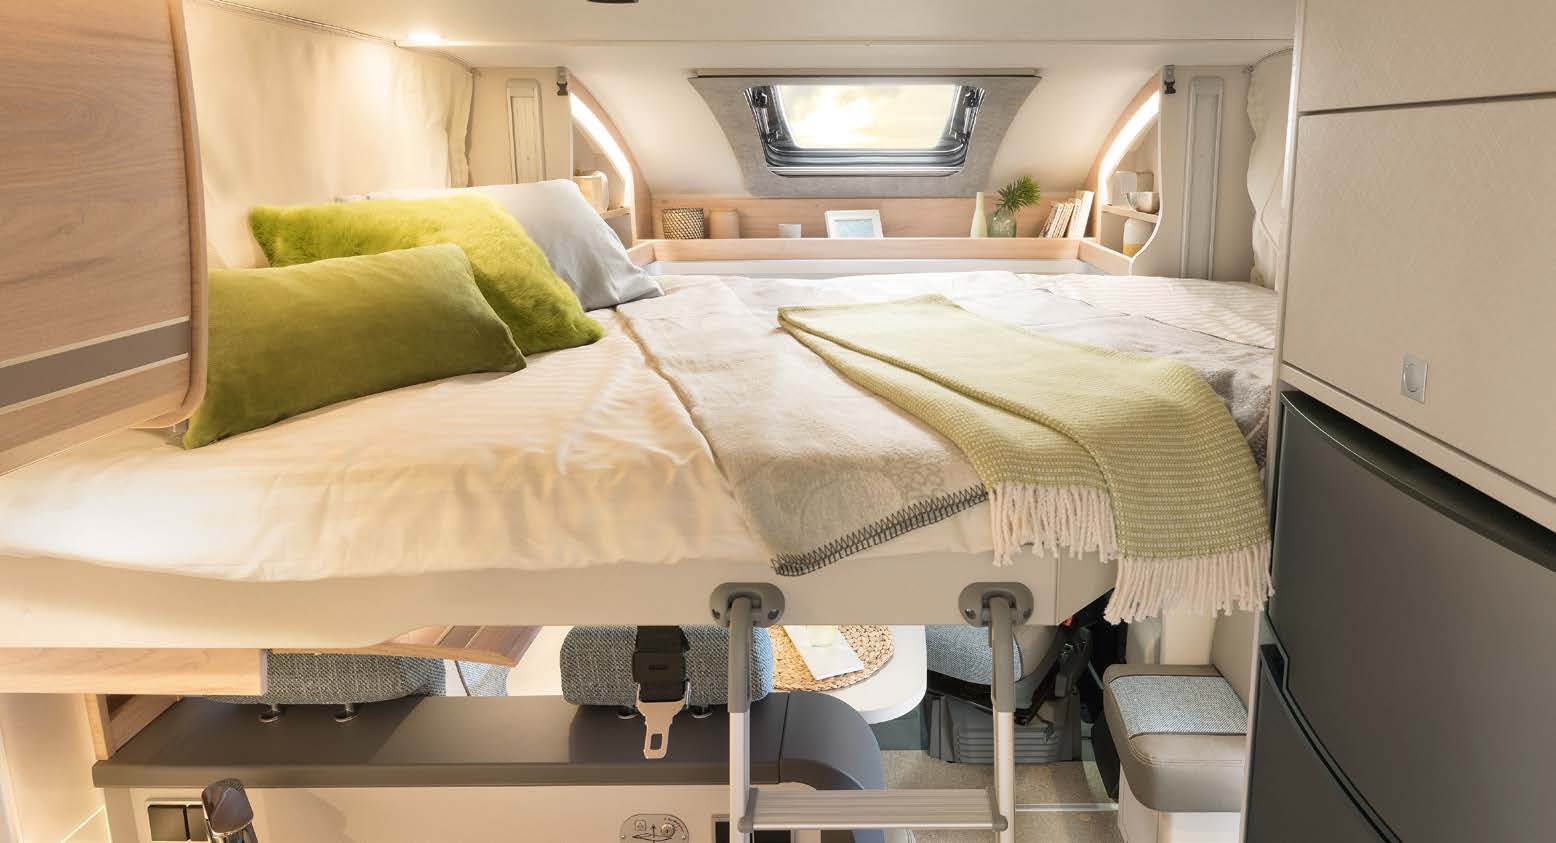 Dwa dodatkowe miejsca do spania dostępne za jednym naciśnięciem przycisku. Elektrycznie podnoszone łóżko o wymiarach 200 x 140 cm za dnia znika pod dachem. • T 7052 EB